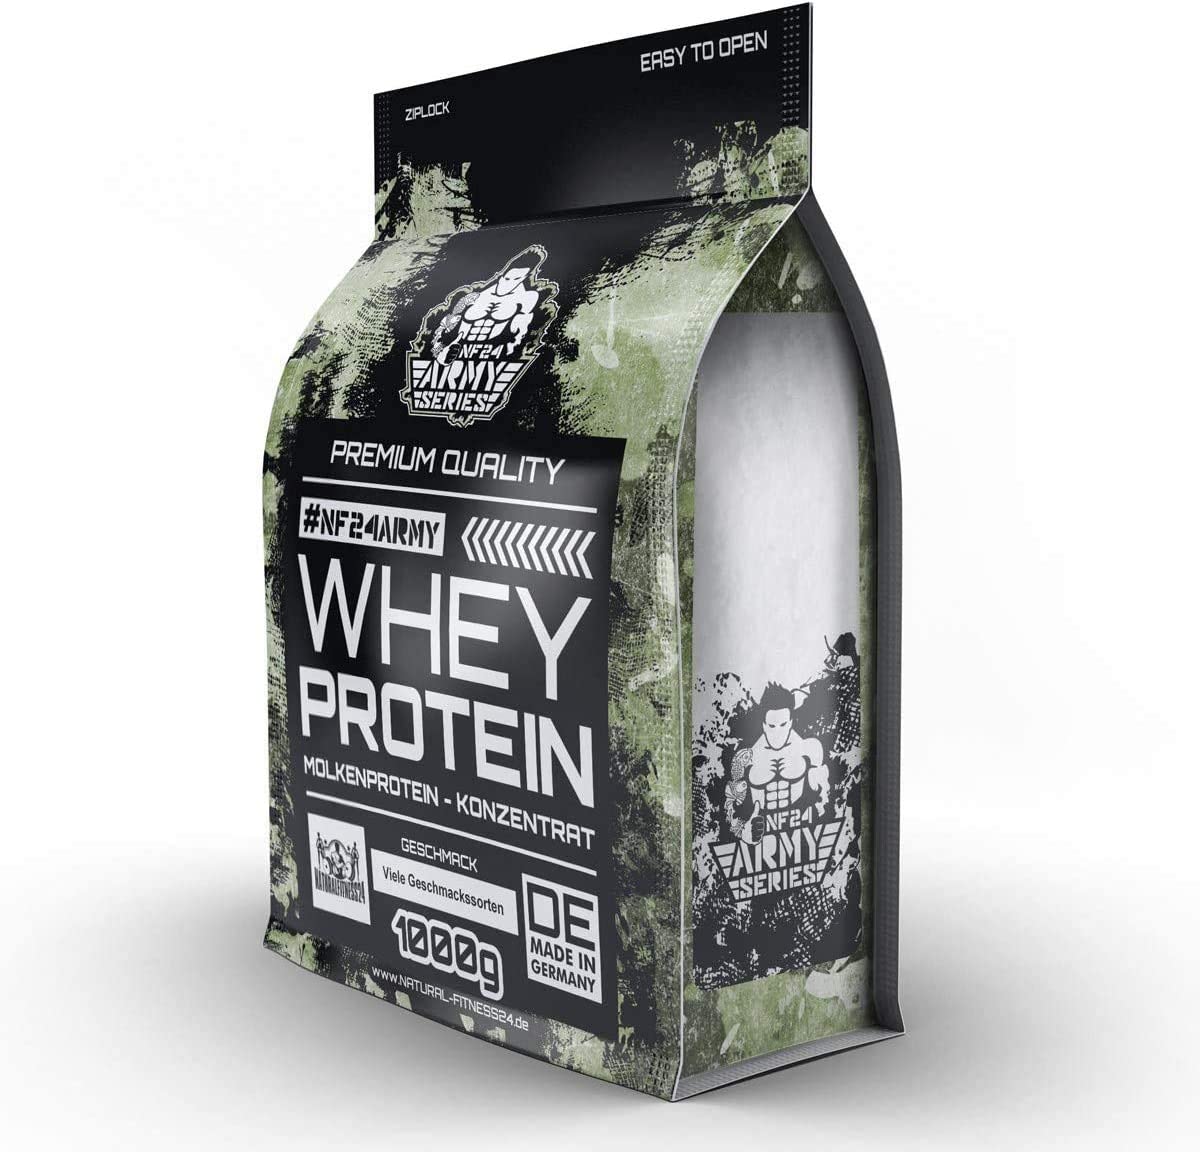 whey protein 1kg